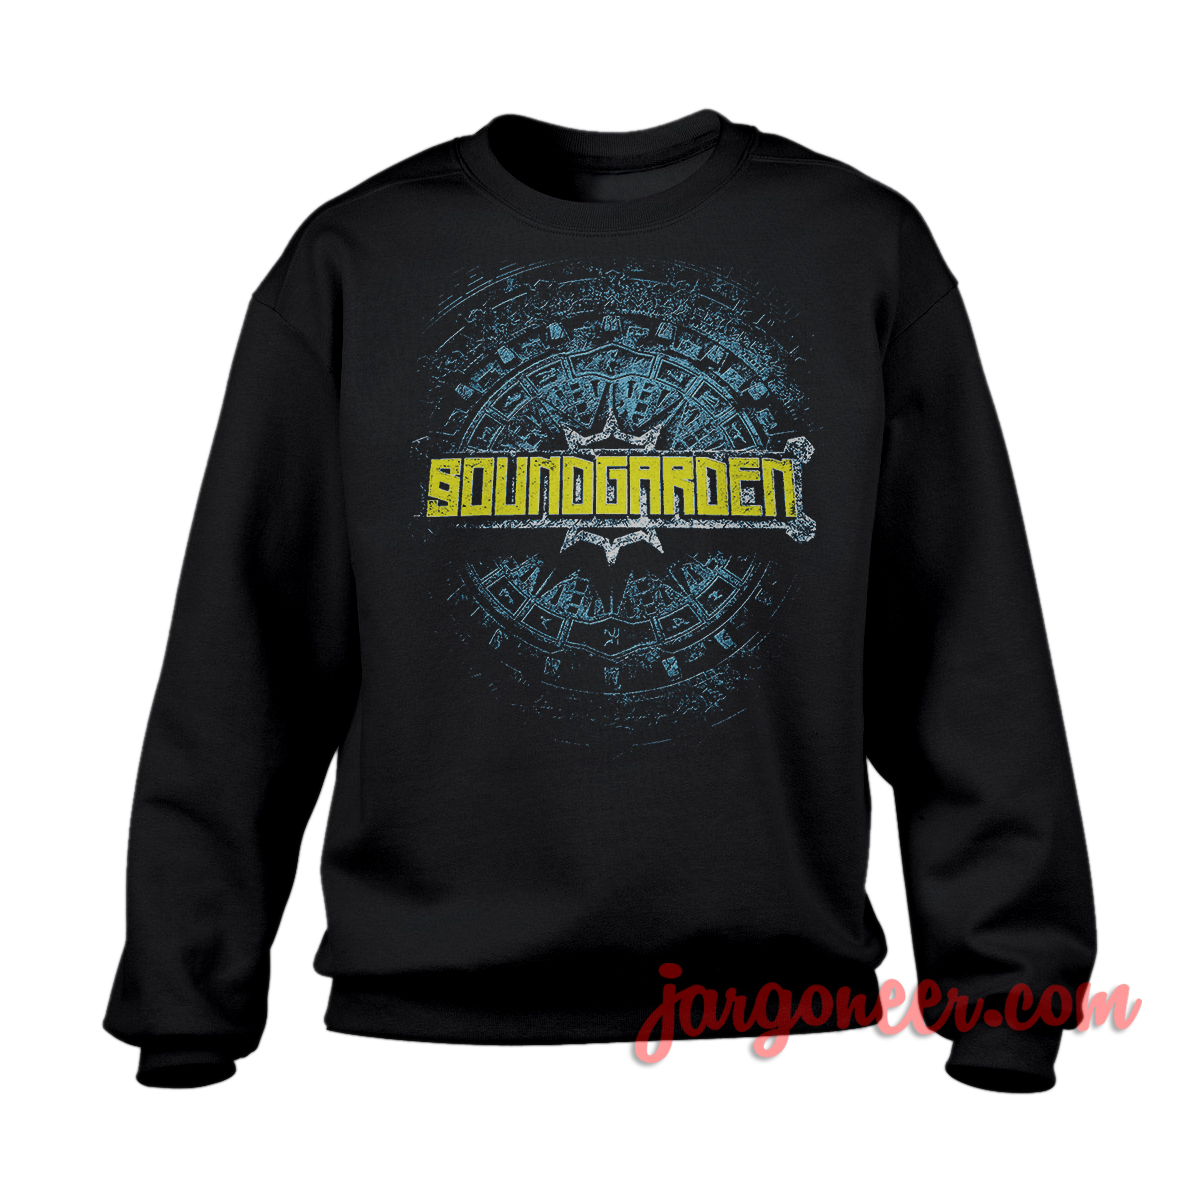 Soundgarden Shield Black SS - Shop Unique Graphic Cool Shirt Designs